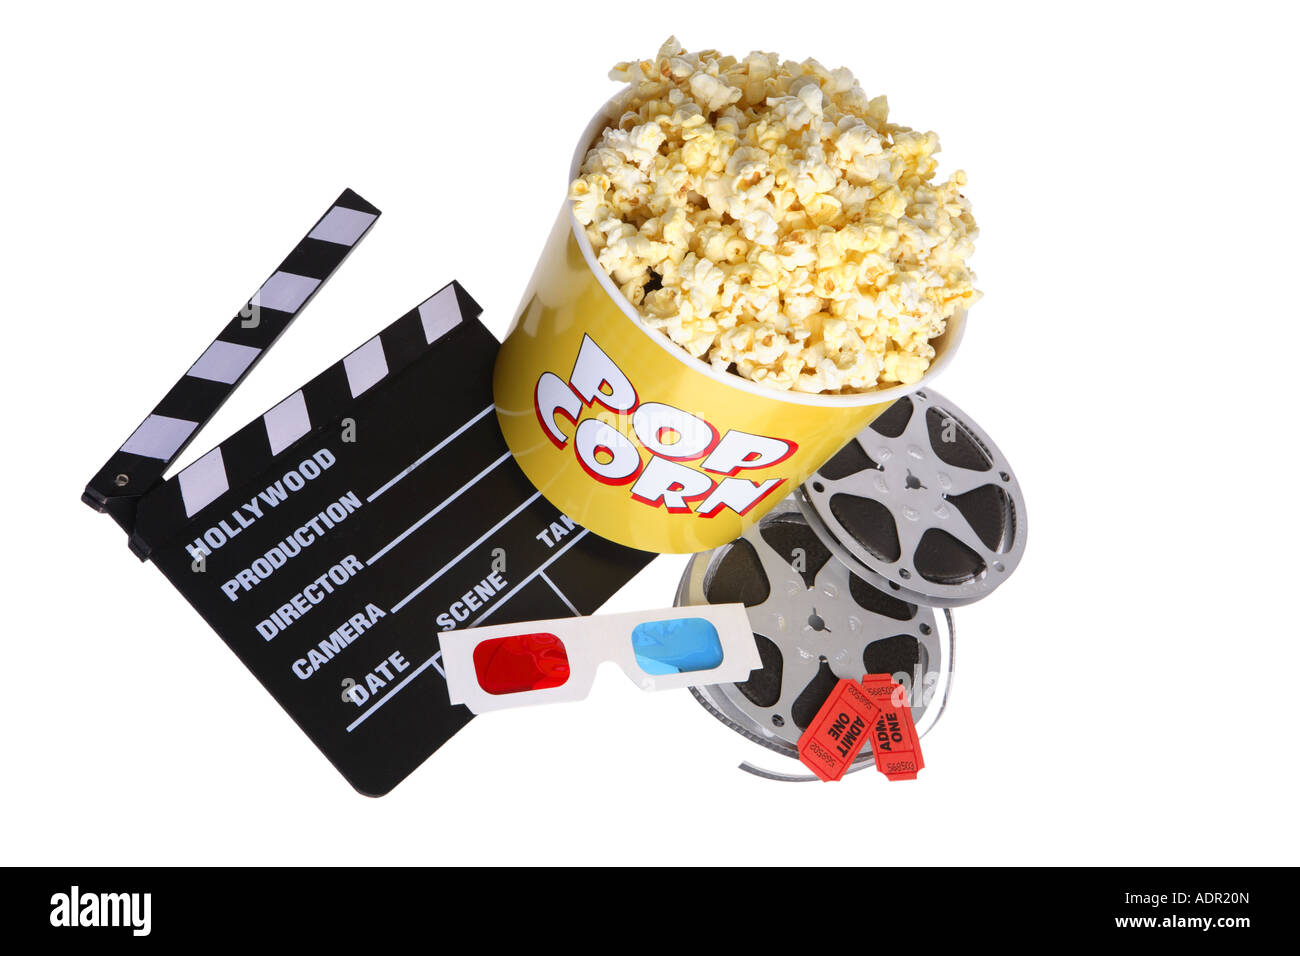 Film choses : clapper board, lunettes 3D, à remous de popcorn, bobines de film et de billets Banque D'Images